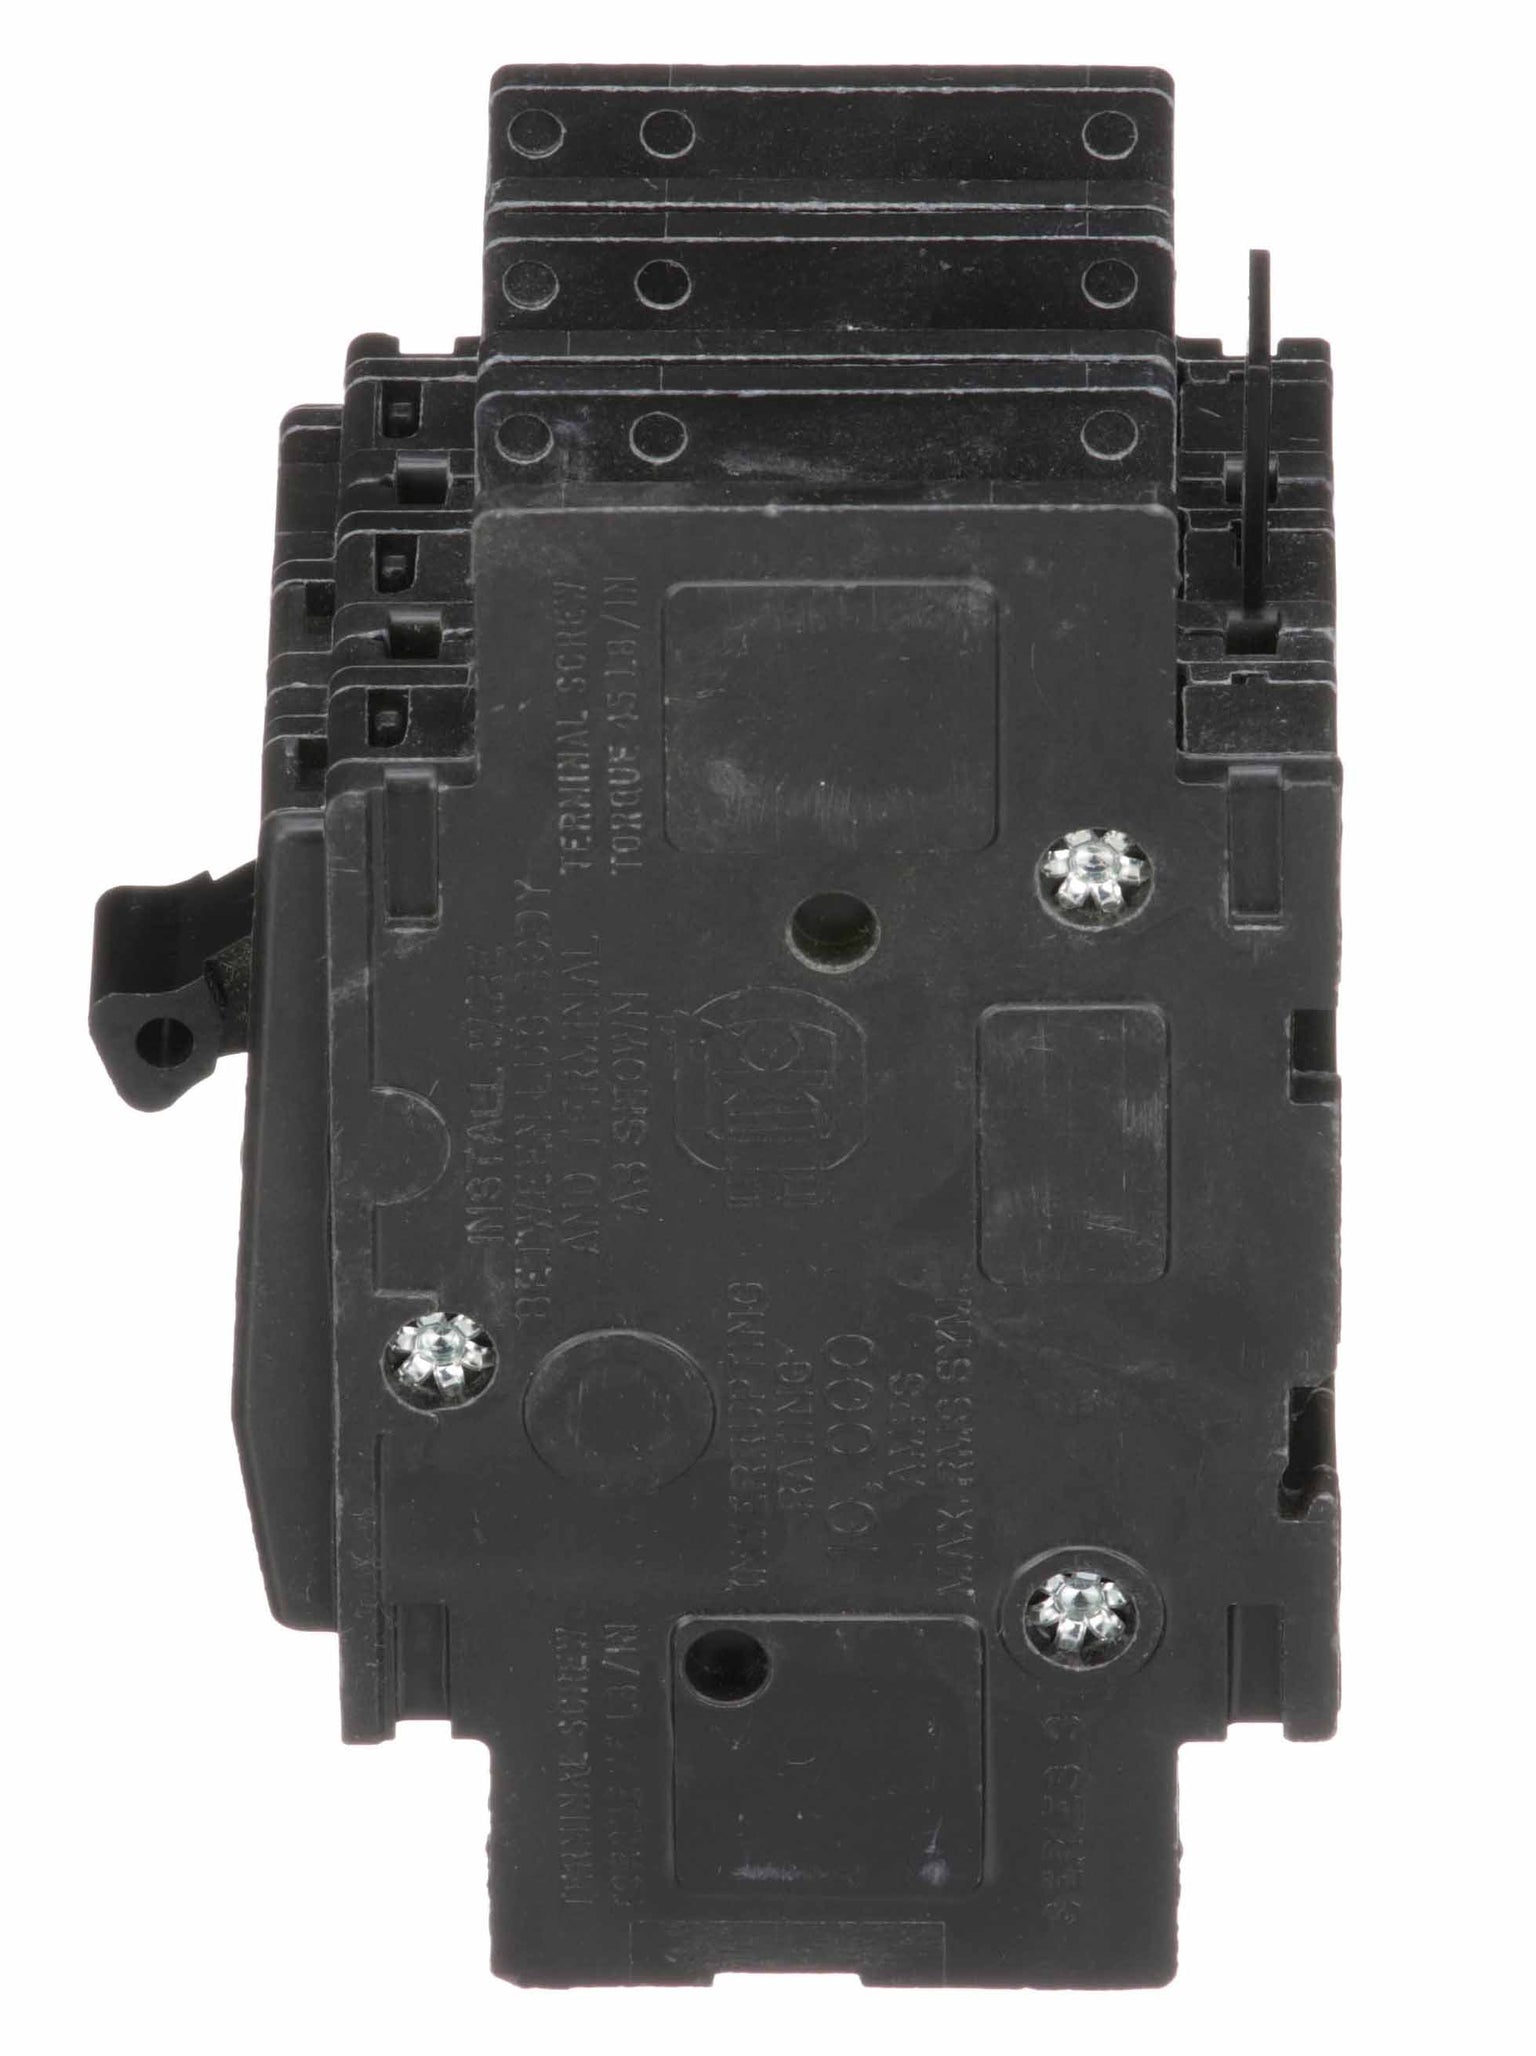 QOU310 - Square D - 10 Amp Circuit Breaker